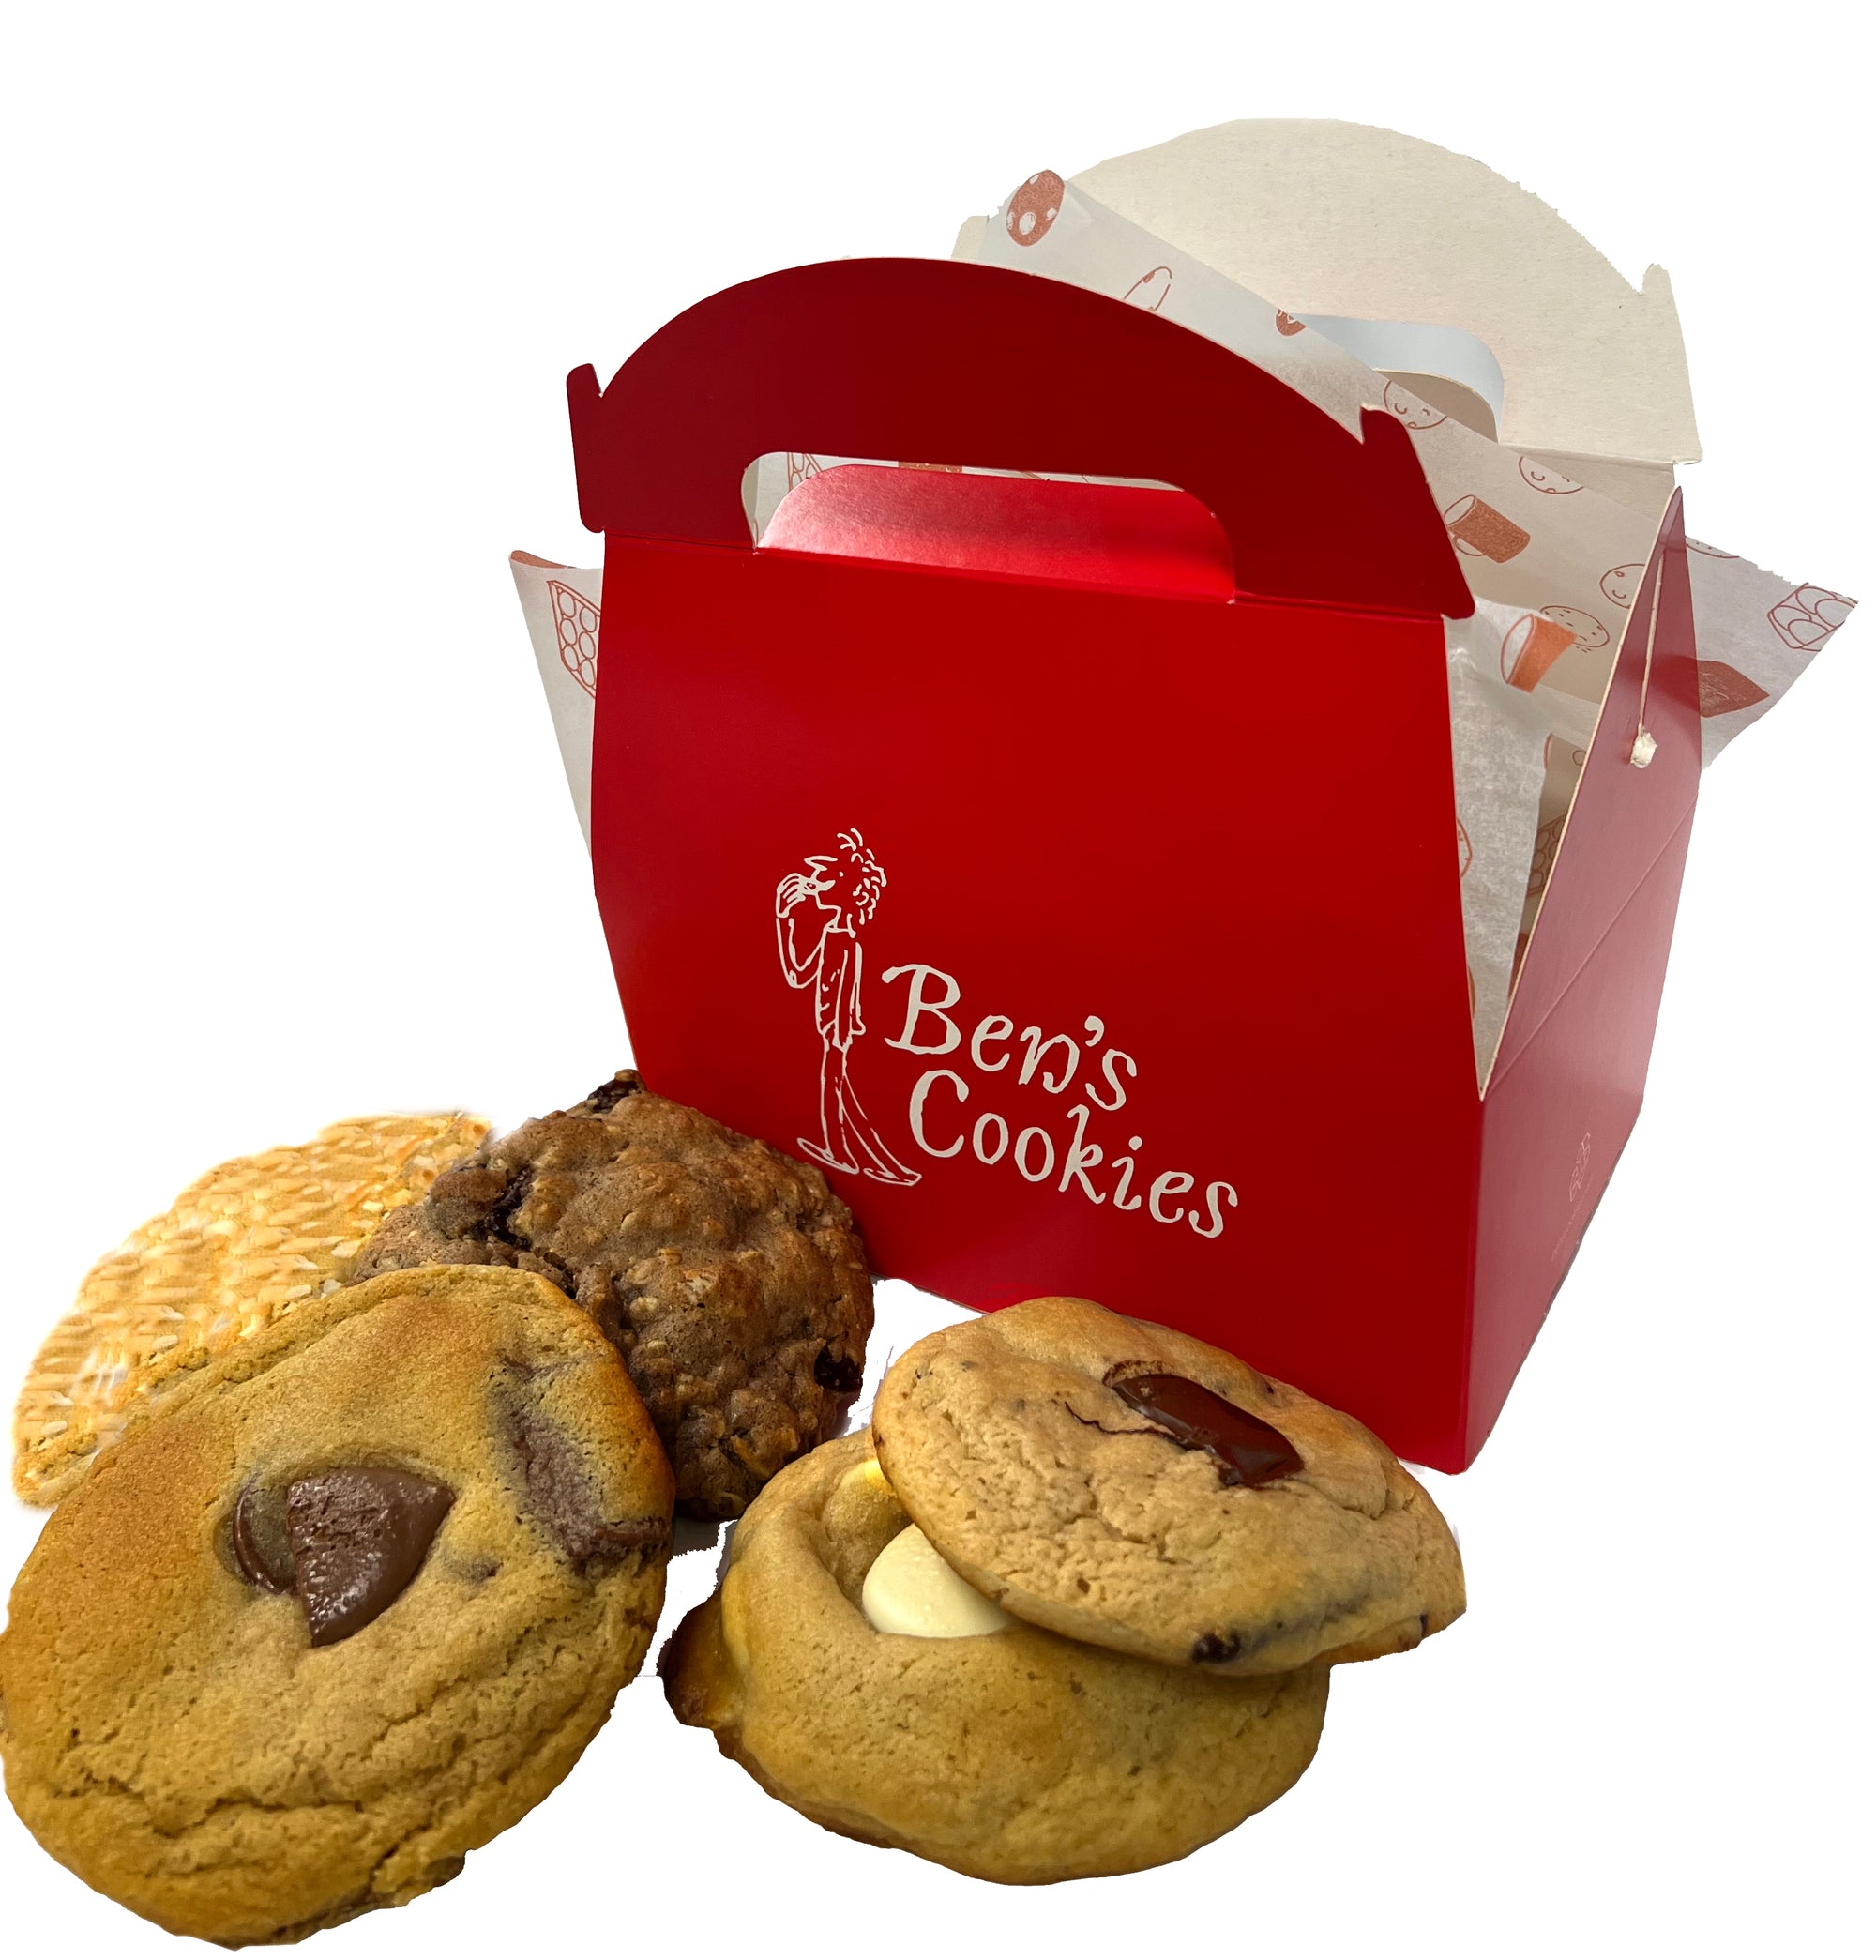 Ben's Cookies - 7 cookies in a Signature Box